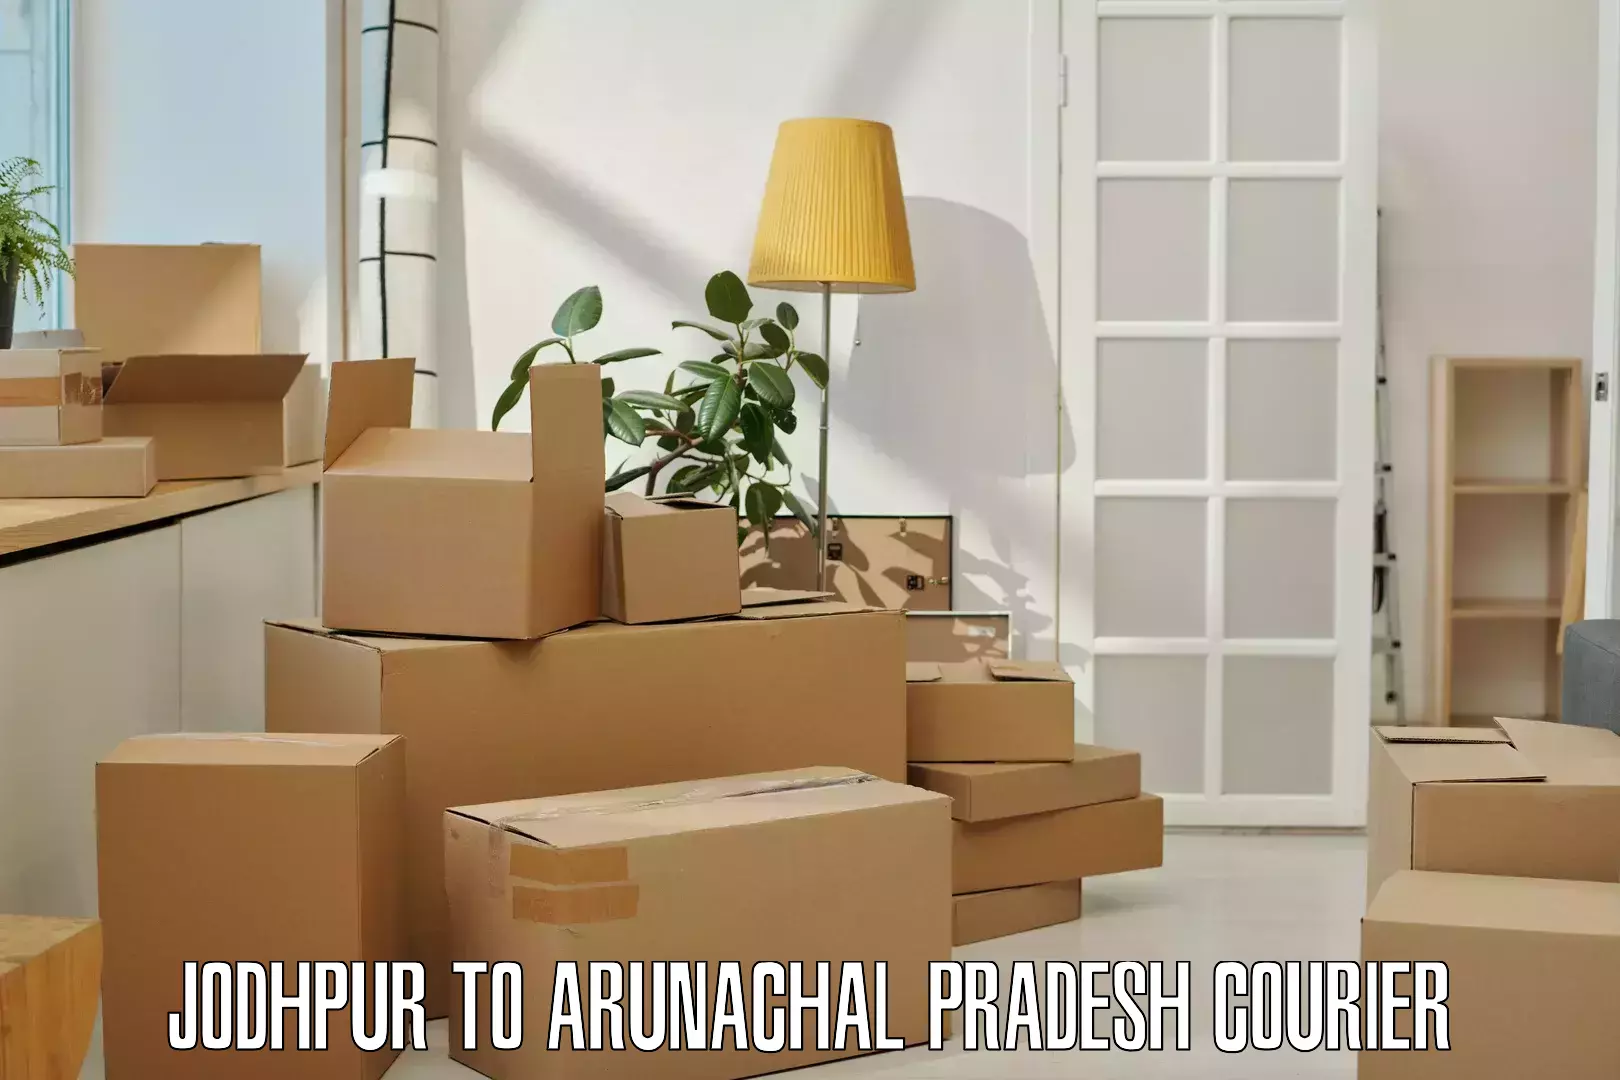 Courier app Jodhpur to Deomali